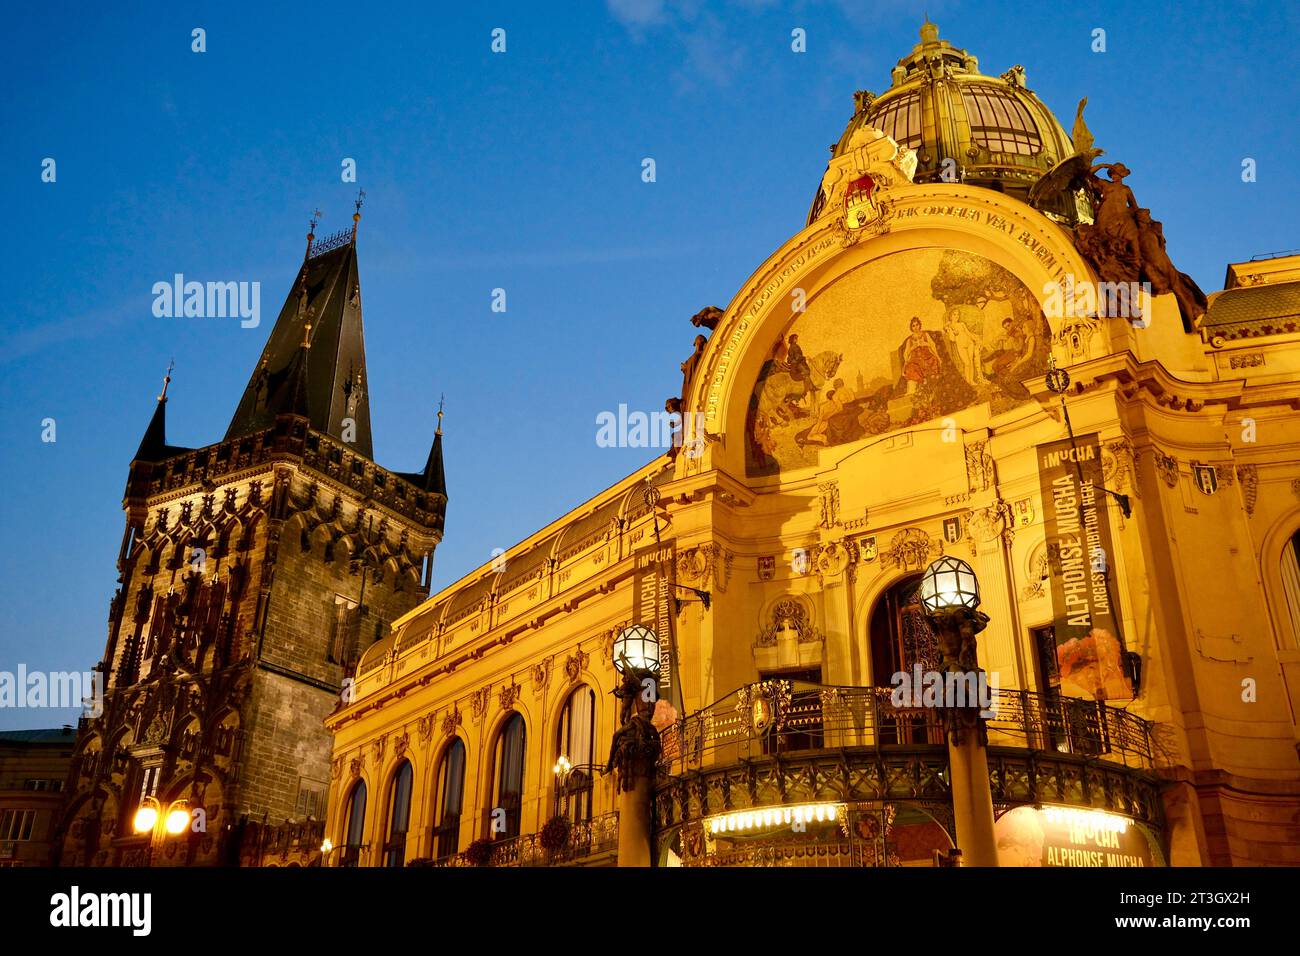 République tchèque, Bohême, Prague, centre historique classé au patrimoine mondial de l'UNESCO, quartier Staré Město (vieille ville), la Tour poudrière (Prašná BRÁNA) et la Maison municipale (Obecní dum) Banque D'Images